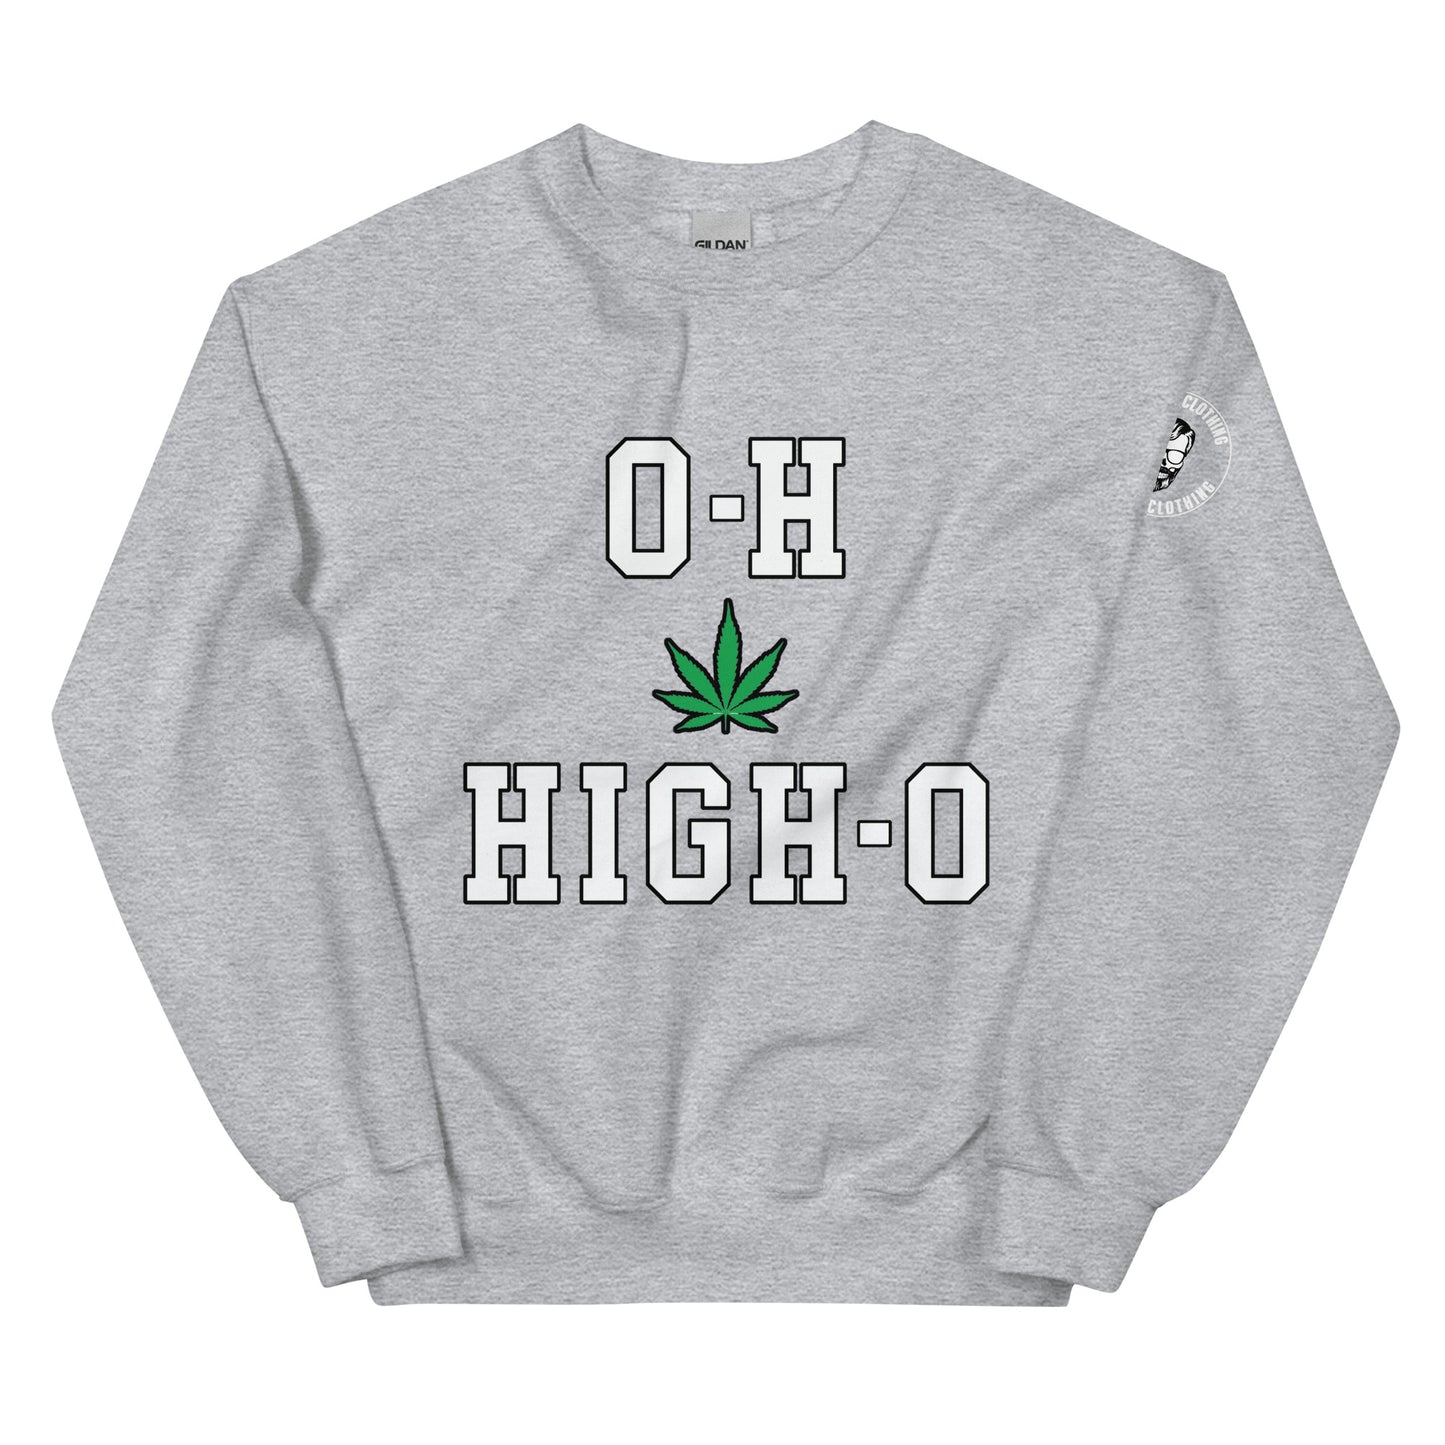 O-H HIGH-O Don Sy Unisex Sweatshirt